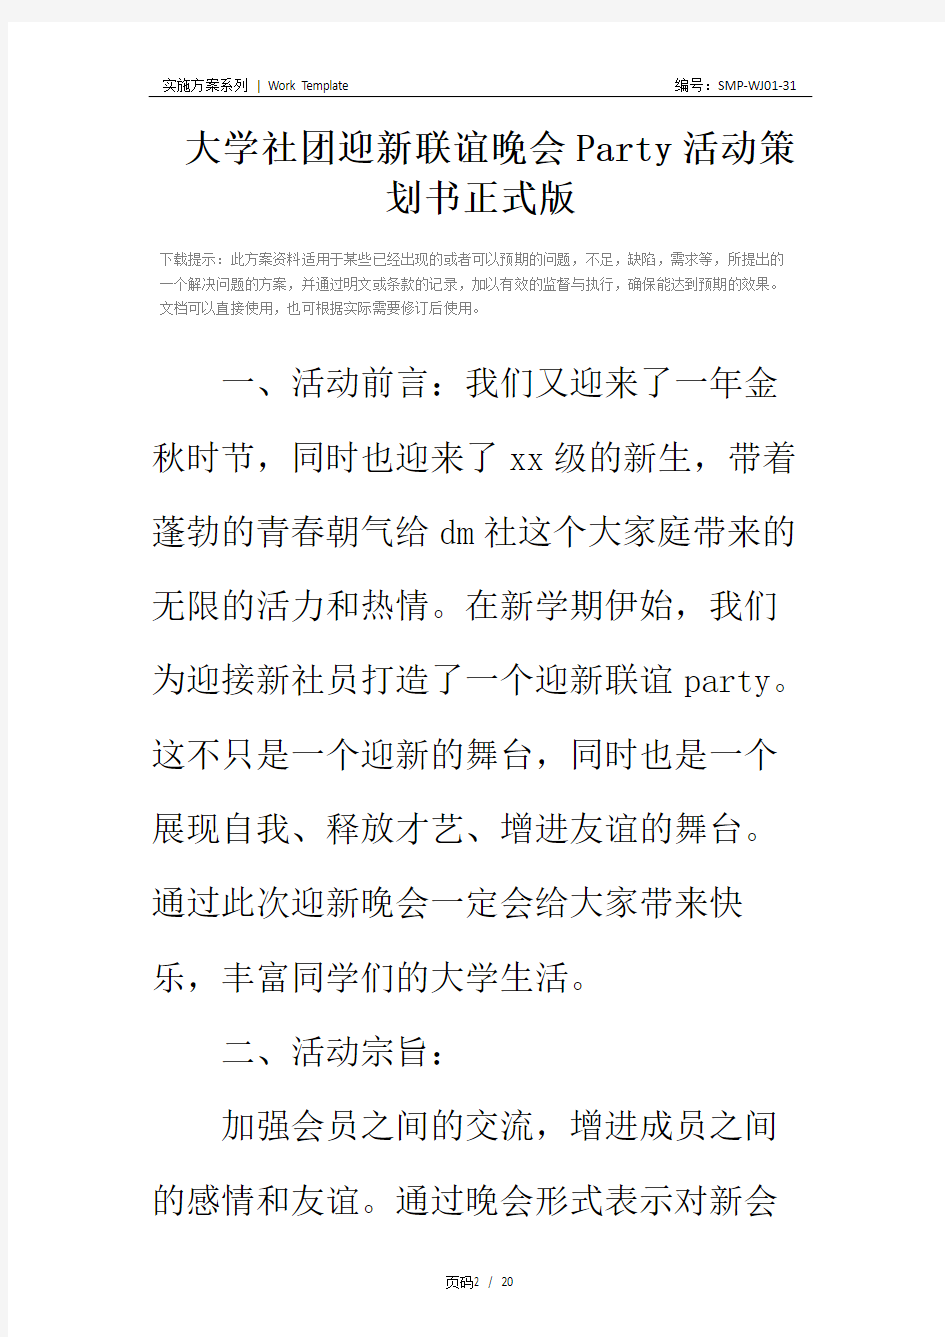 大学社团迎新联谊晚会Party活动策划书正式版